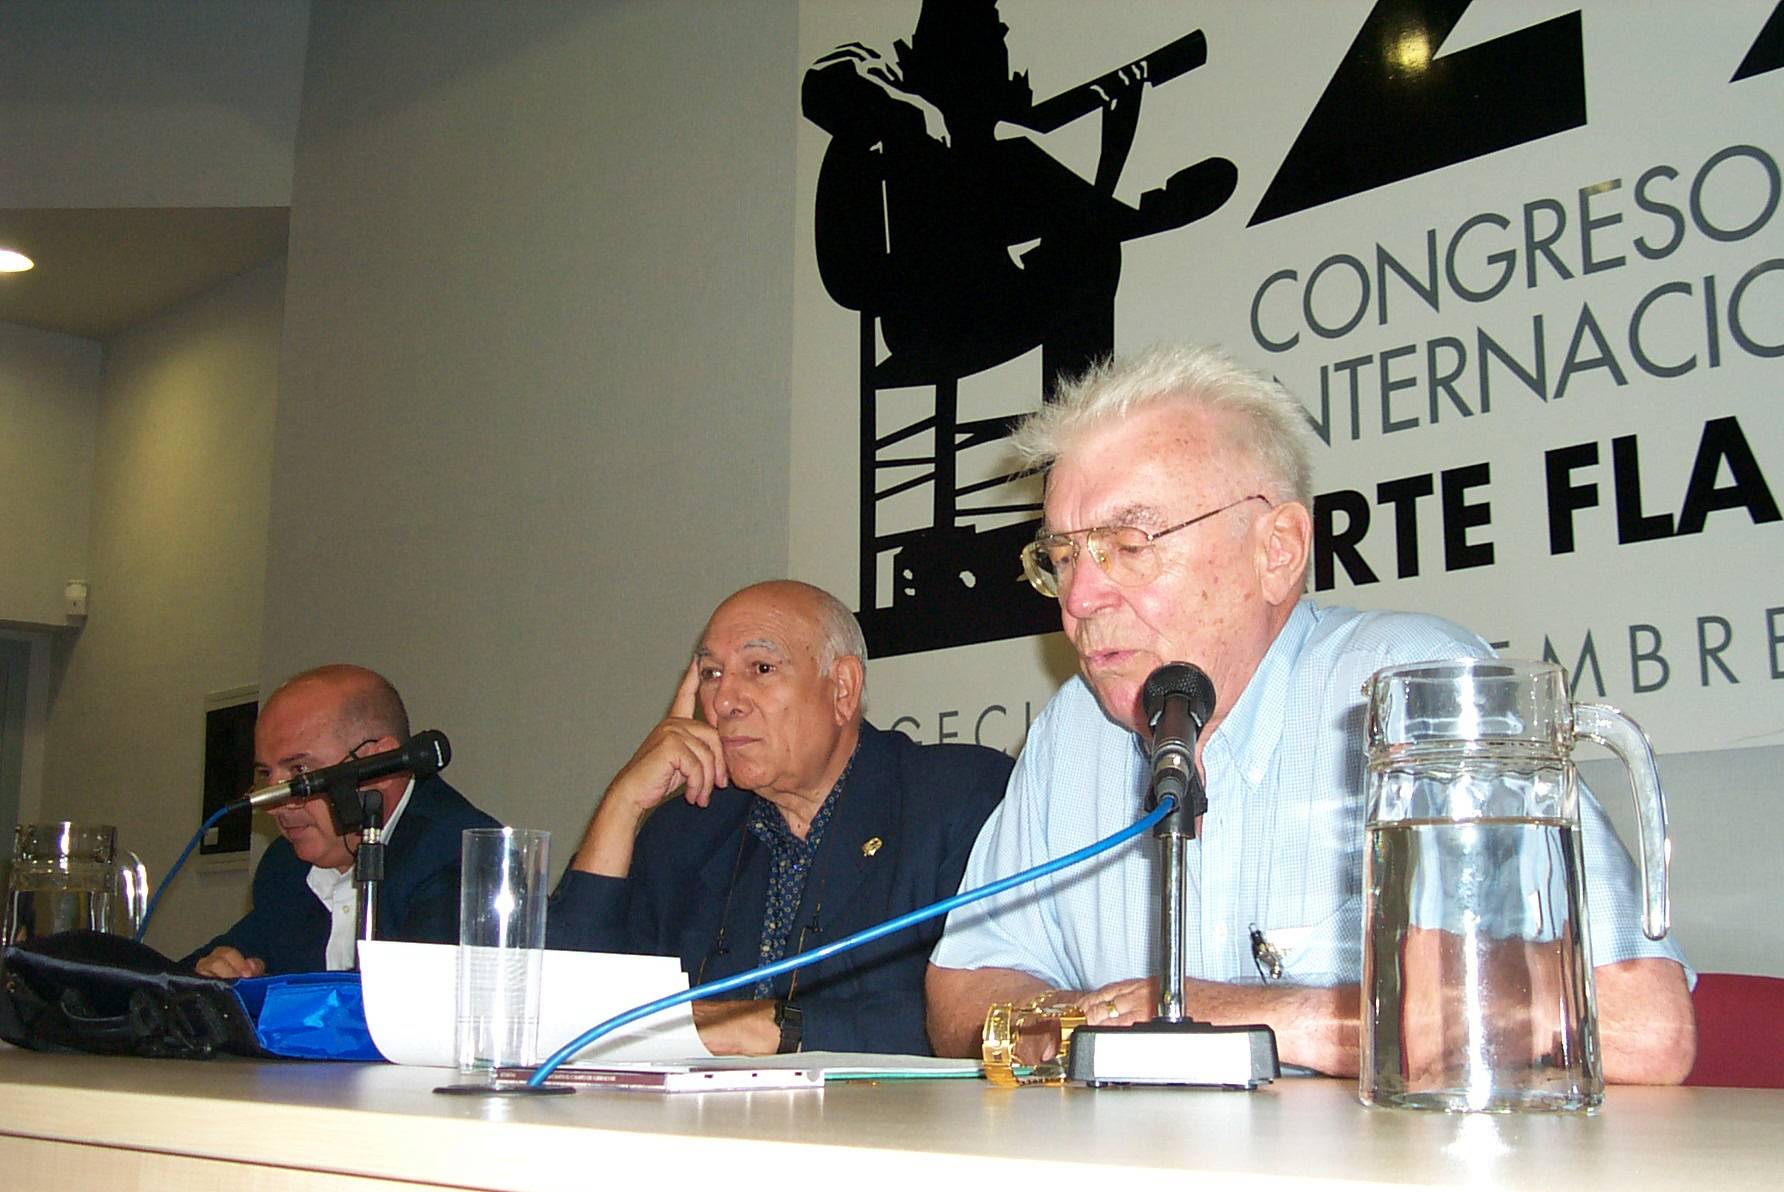 Lefranc presentando su libro en el Congreso de Algeciras, junto a Manuel López Rodríguez y Pablo Franco. (Archivo Lefranc, 2001)